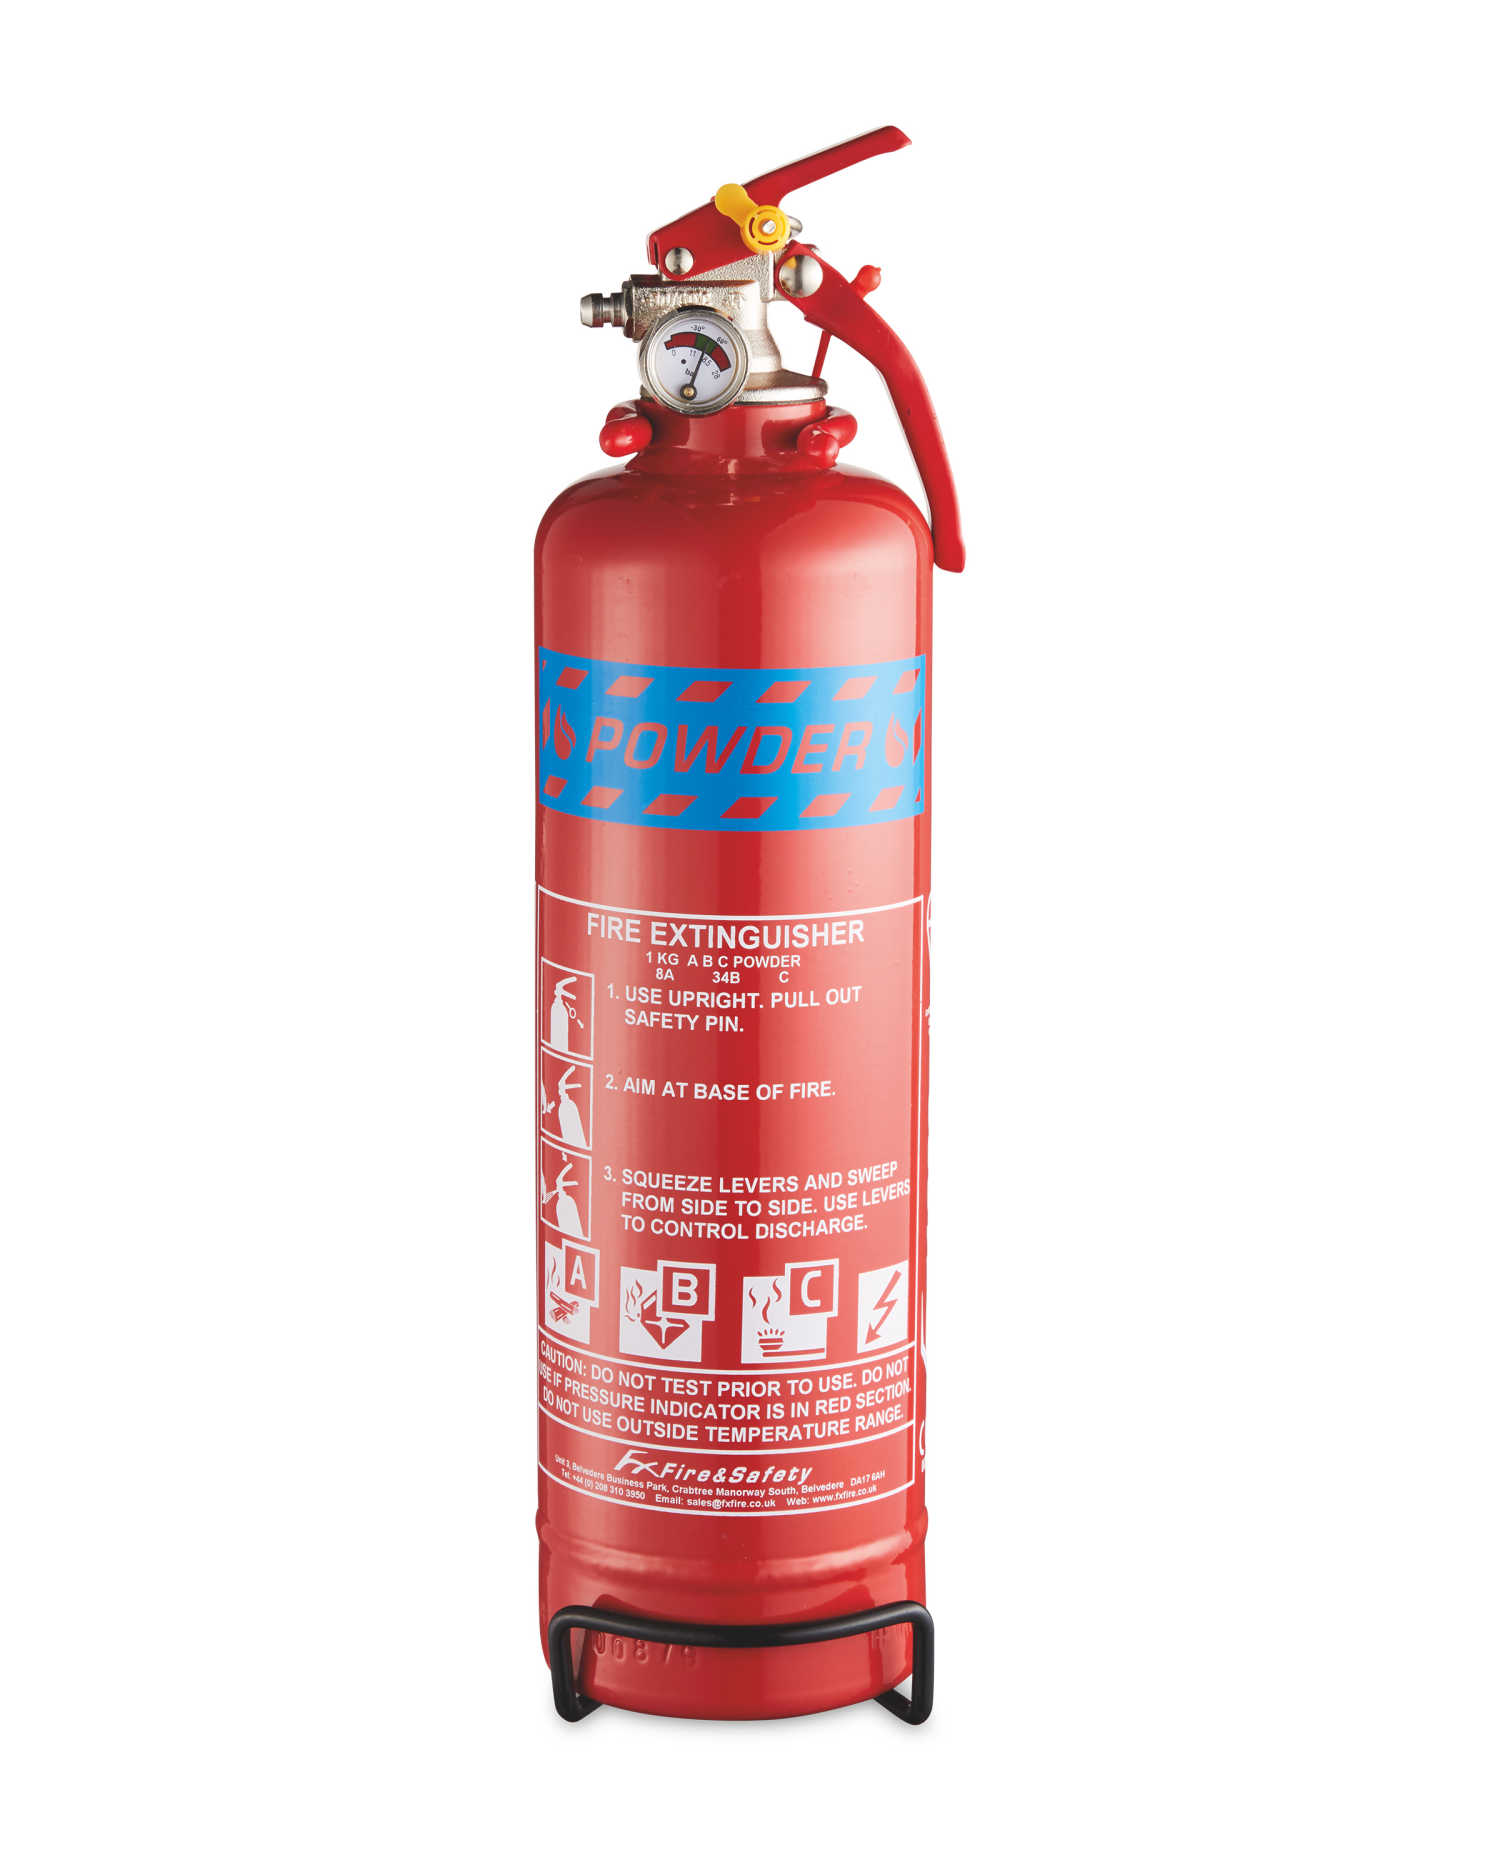 FX Fire Extinguisher